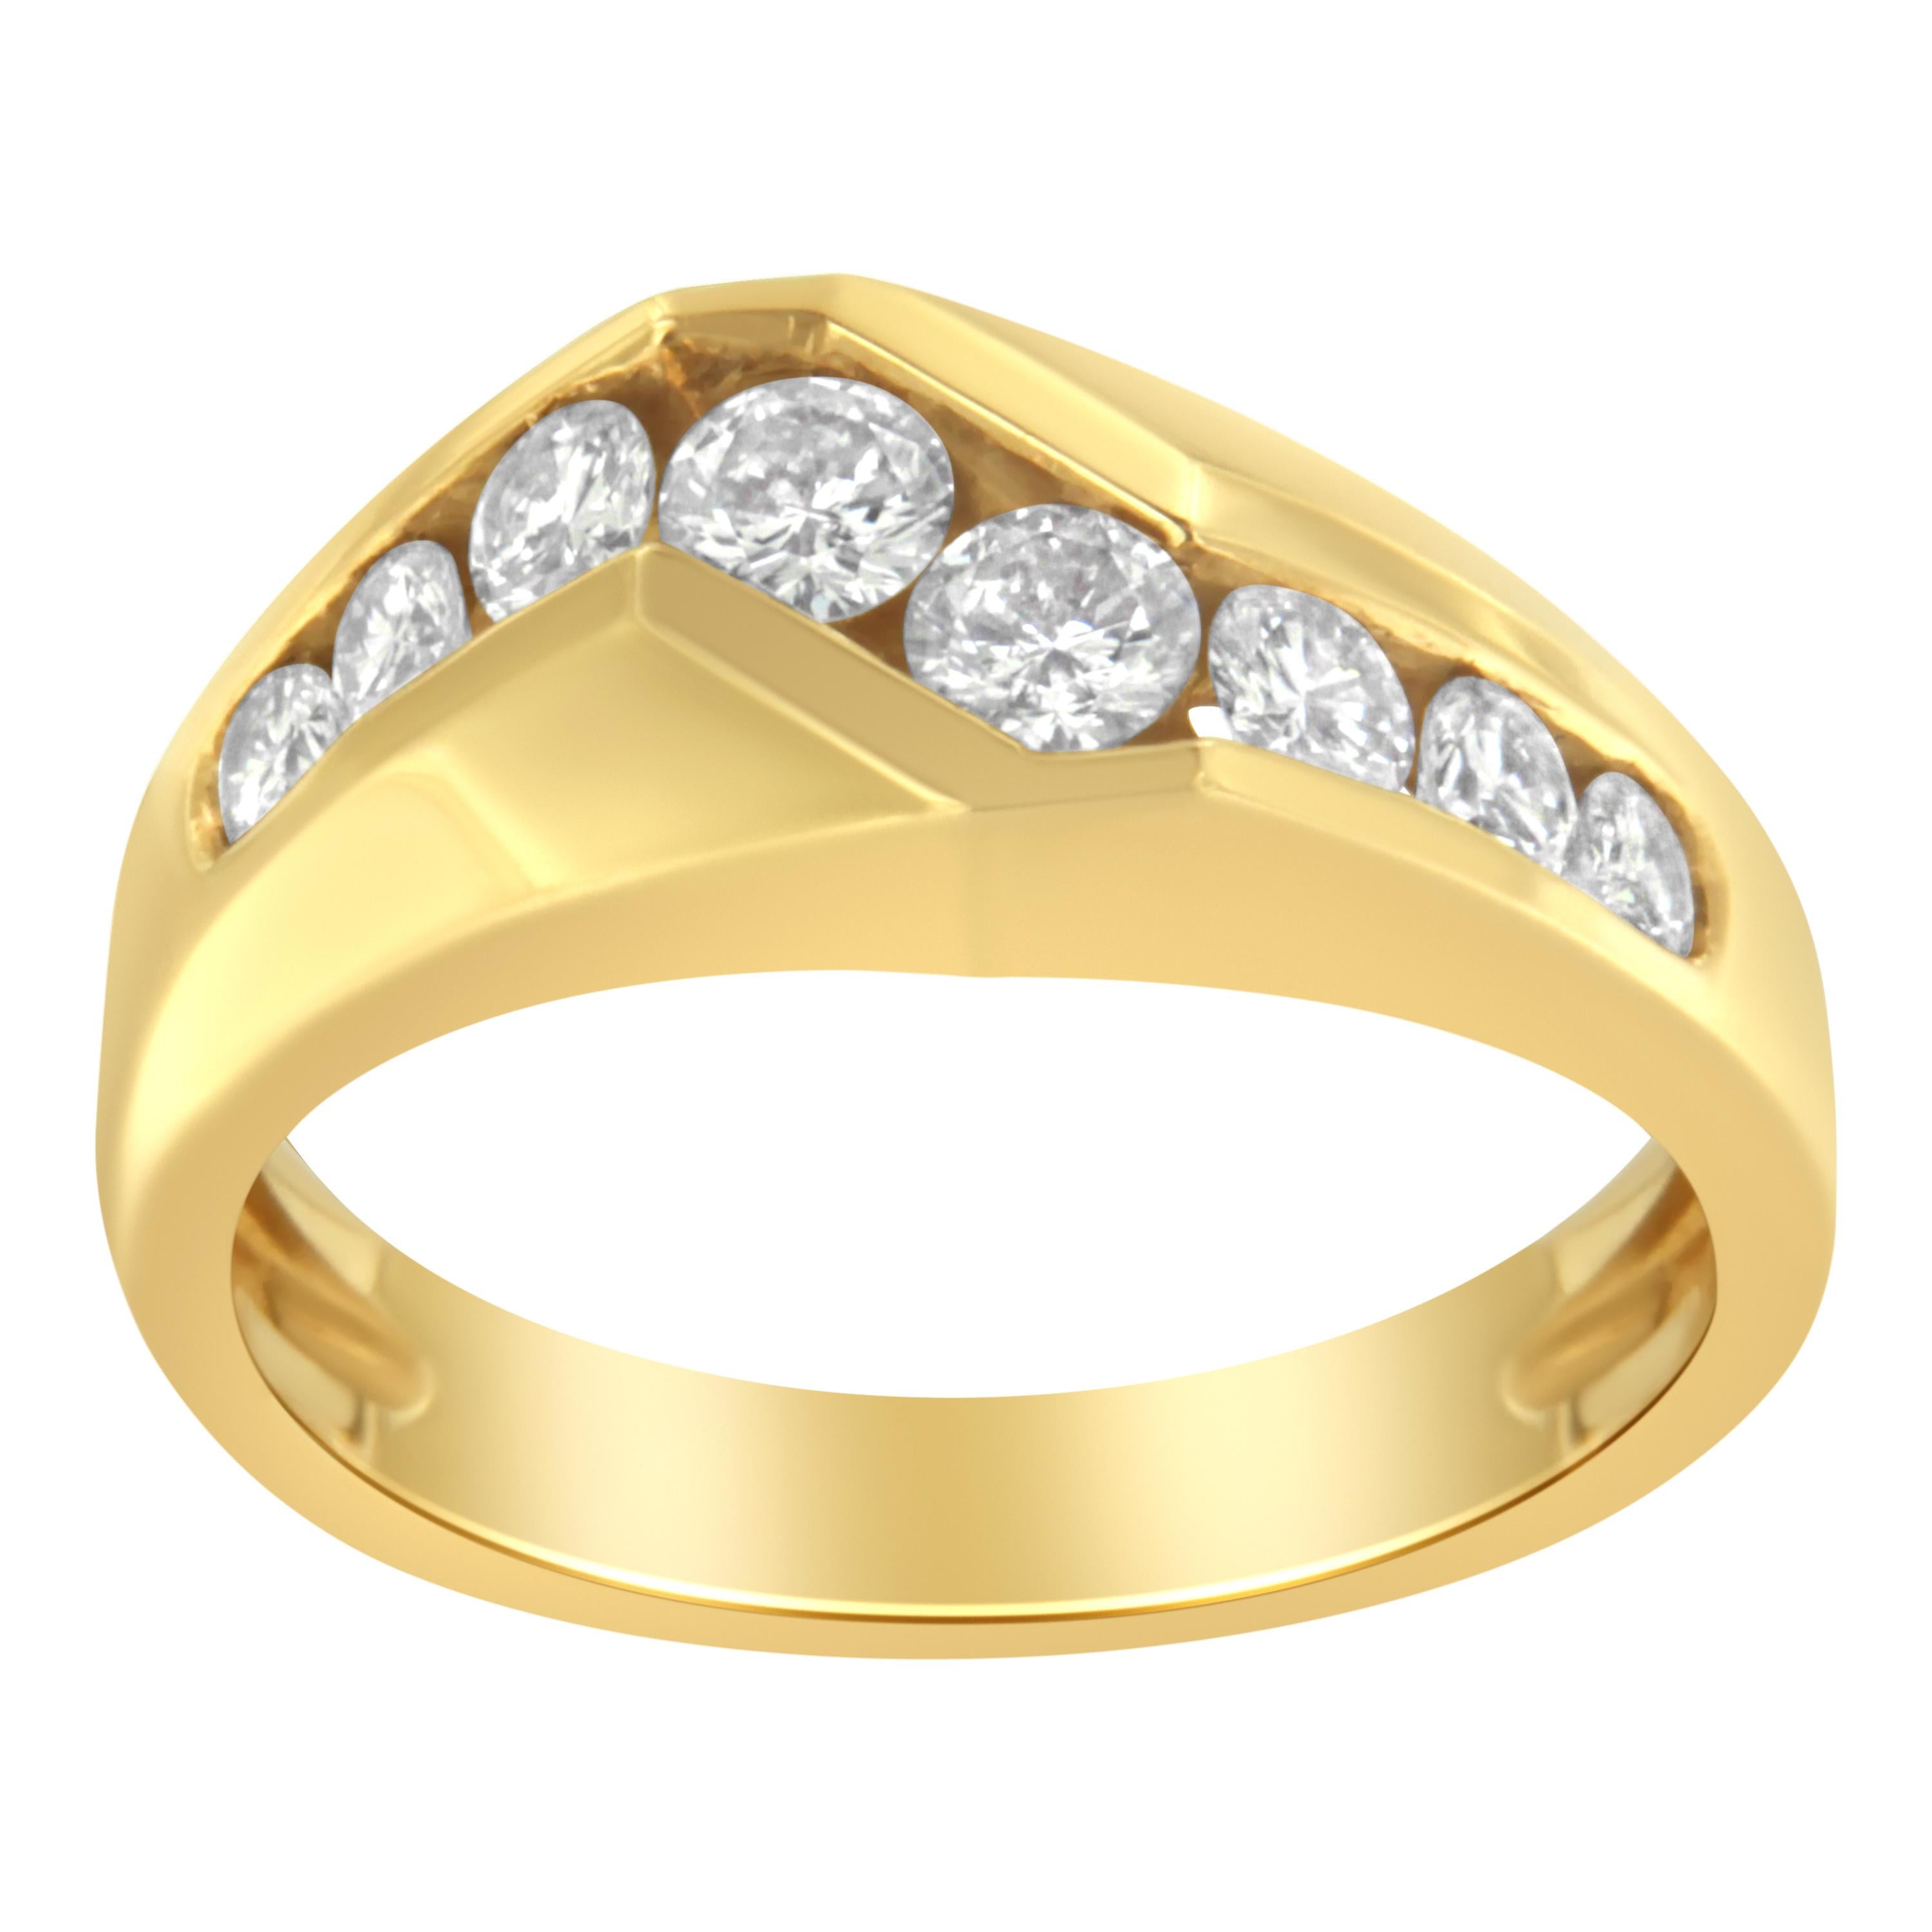 Ein diamantenes Herrenarmband in einzigartigem Design mit acht abgestuften runden Diamanten:: die in einer Z-Form entlang eines breiten 14-karätigen Gelbgoldbandes gefasst sind. Das elegante Design hat ein Diamantgewicht von insgesamt 1 Karat. video